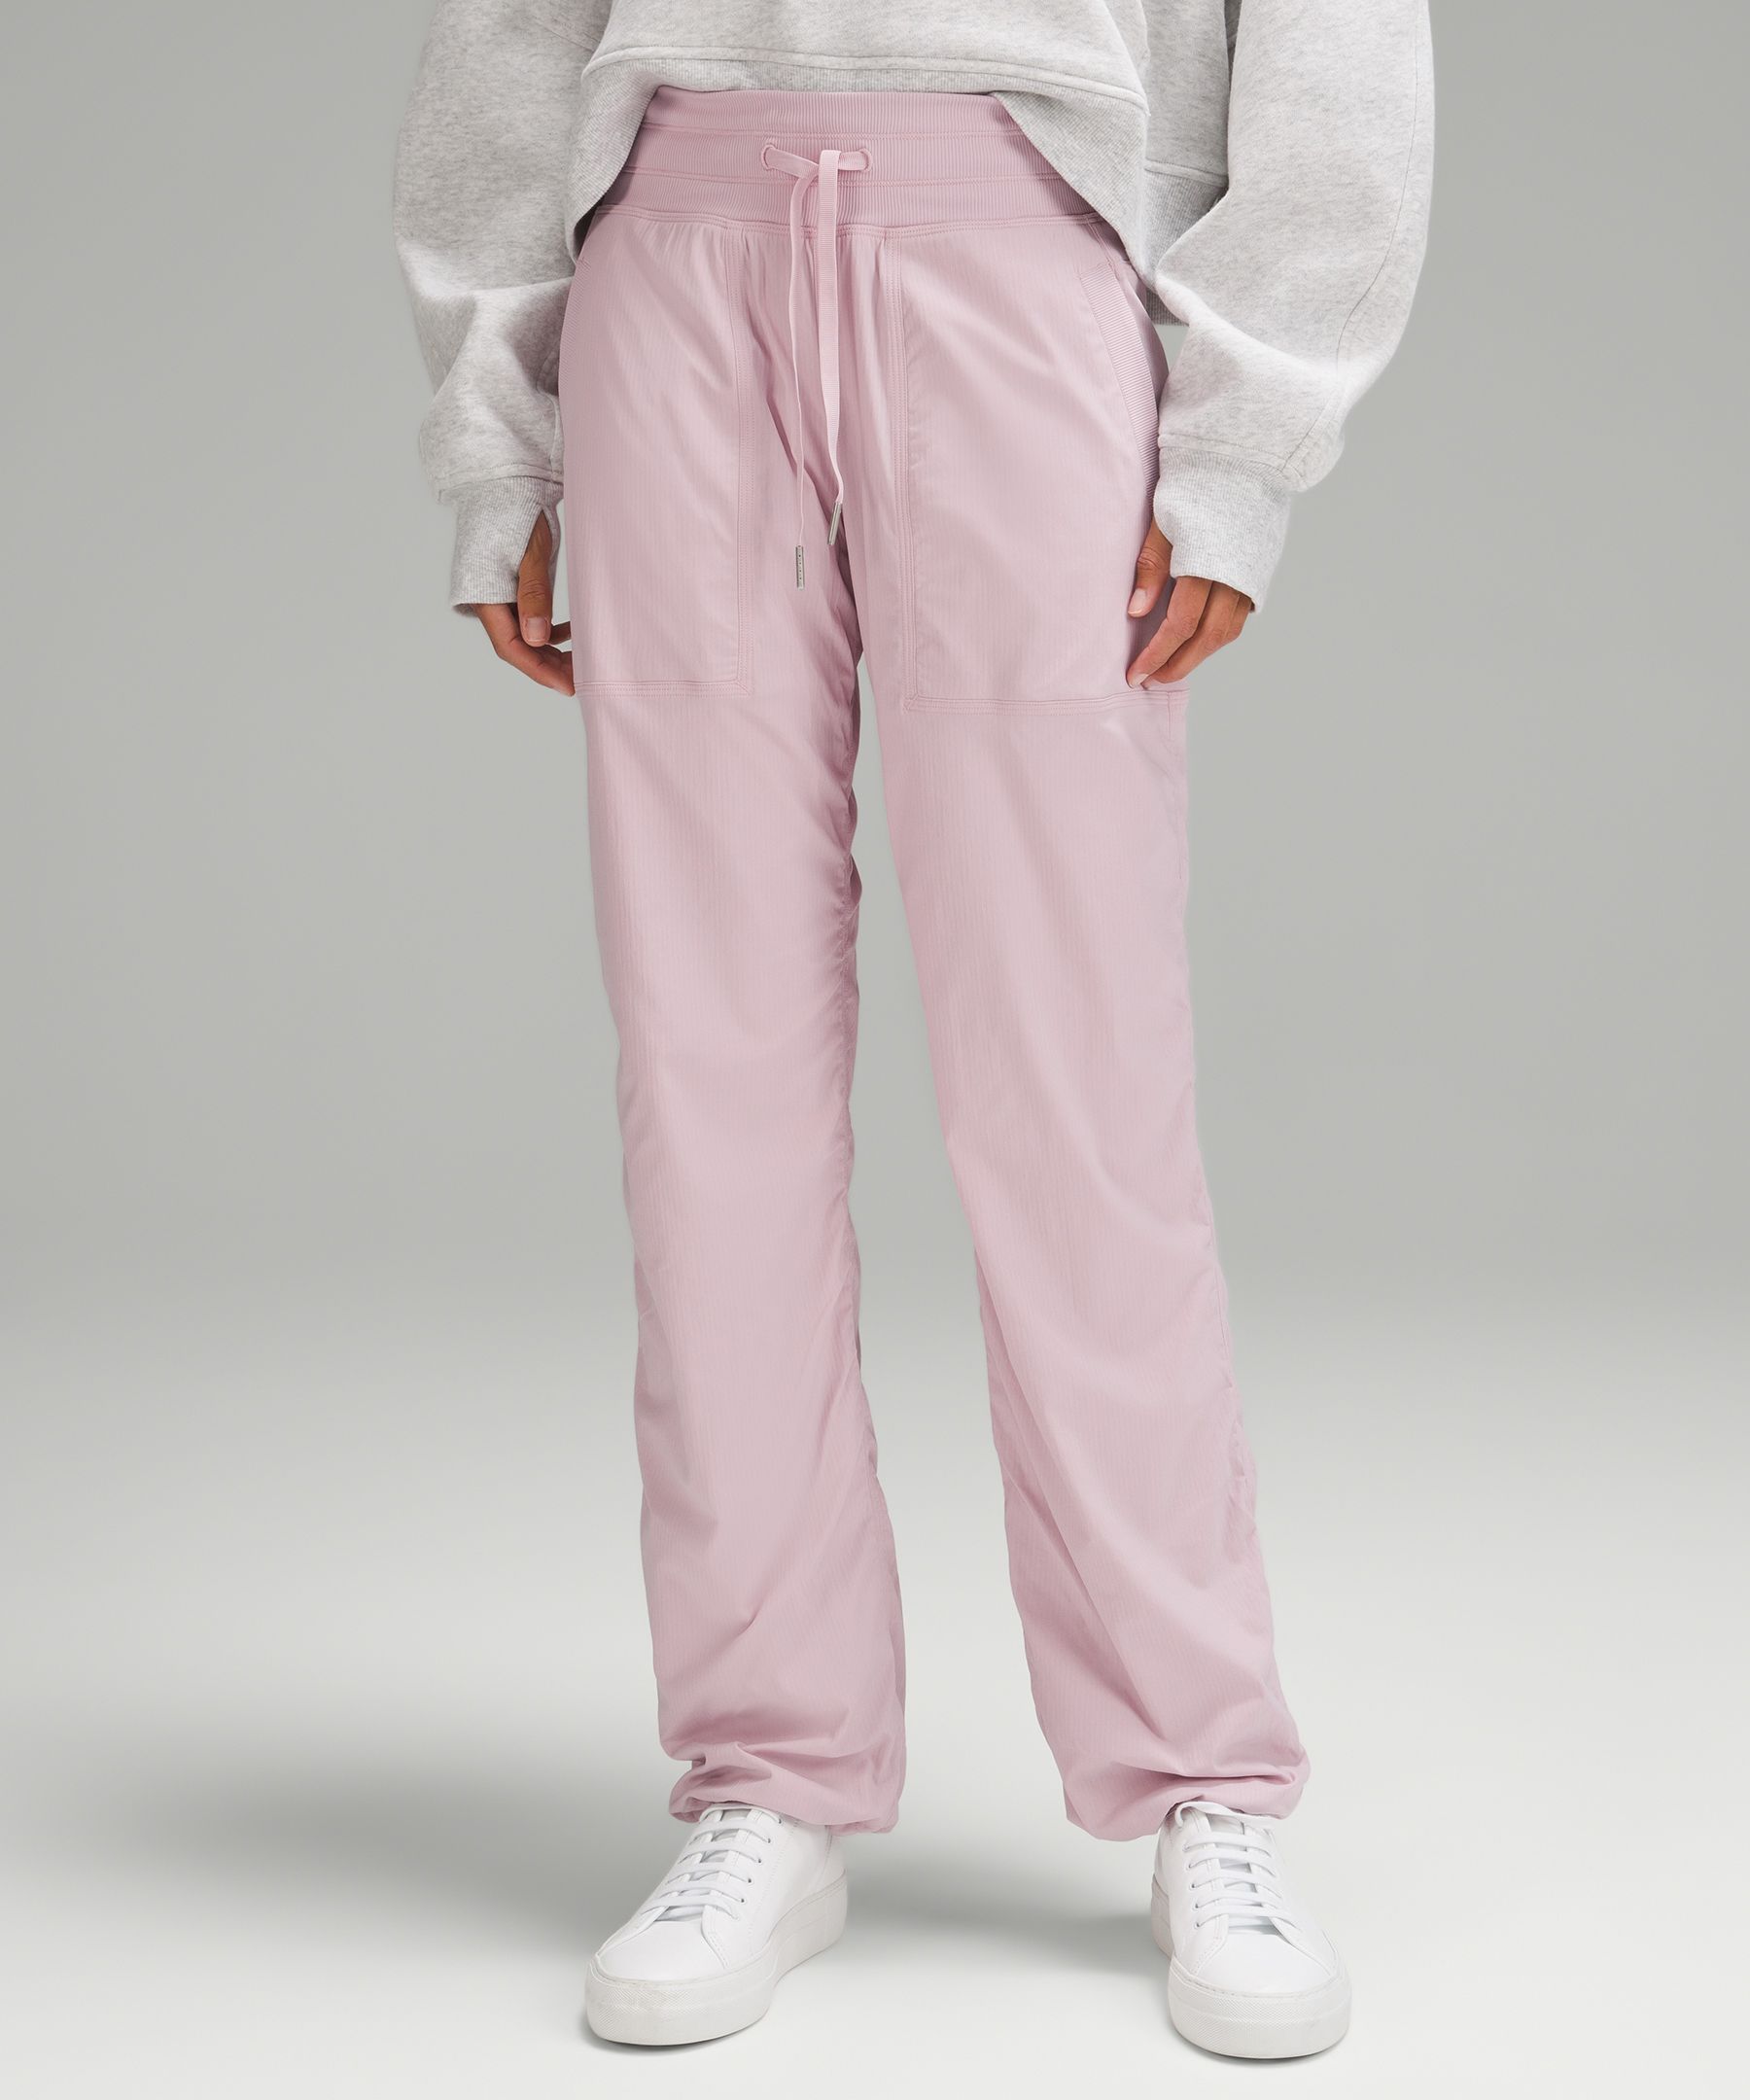 lululemon - Dance Studio Mid-rise Full-length Pants on Designer